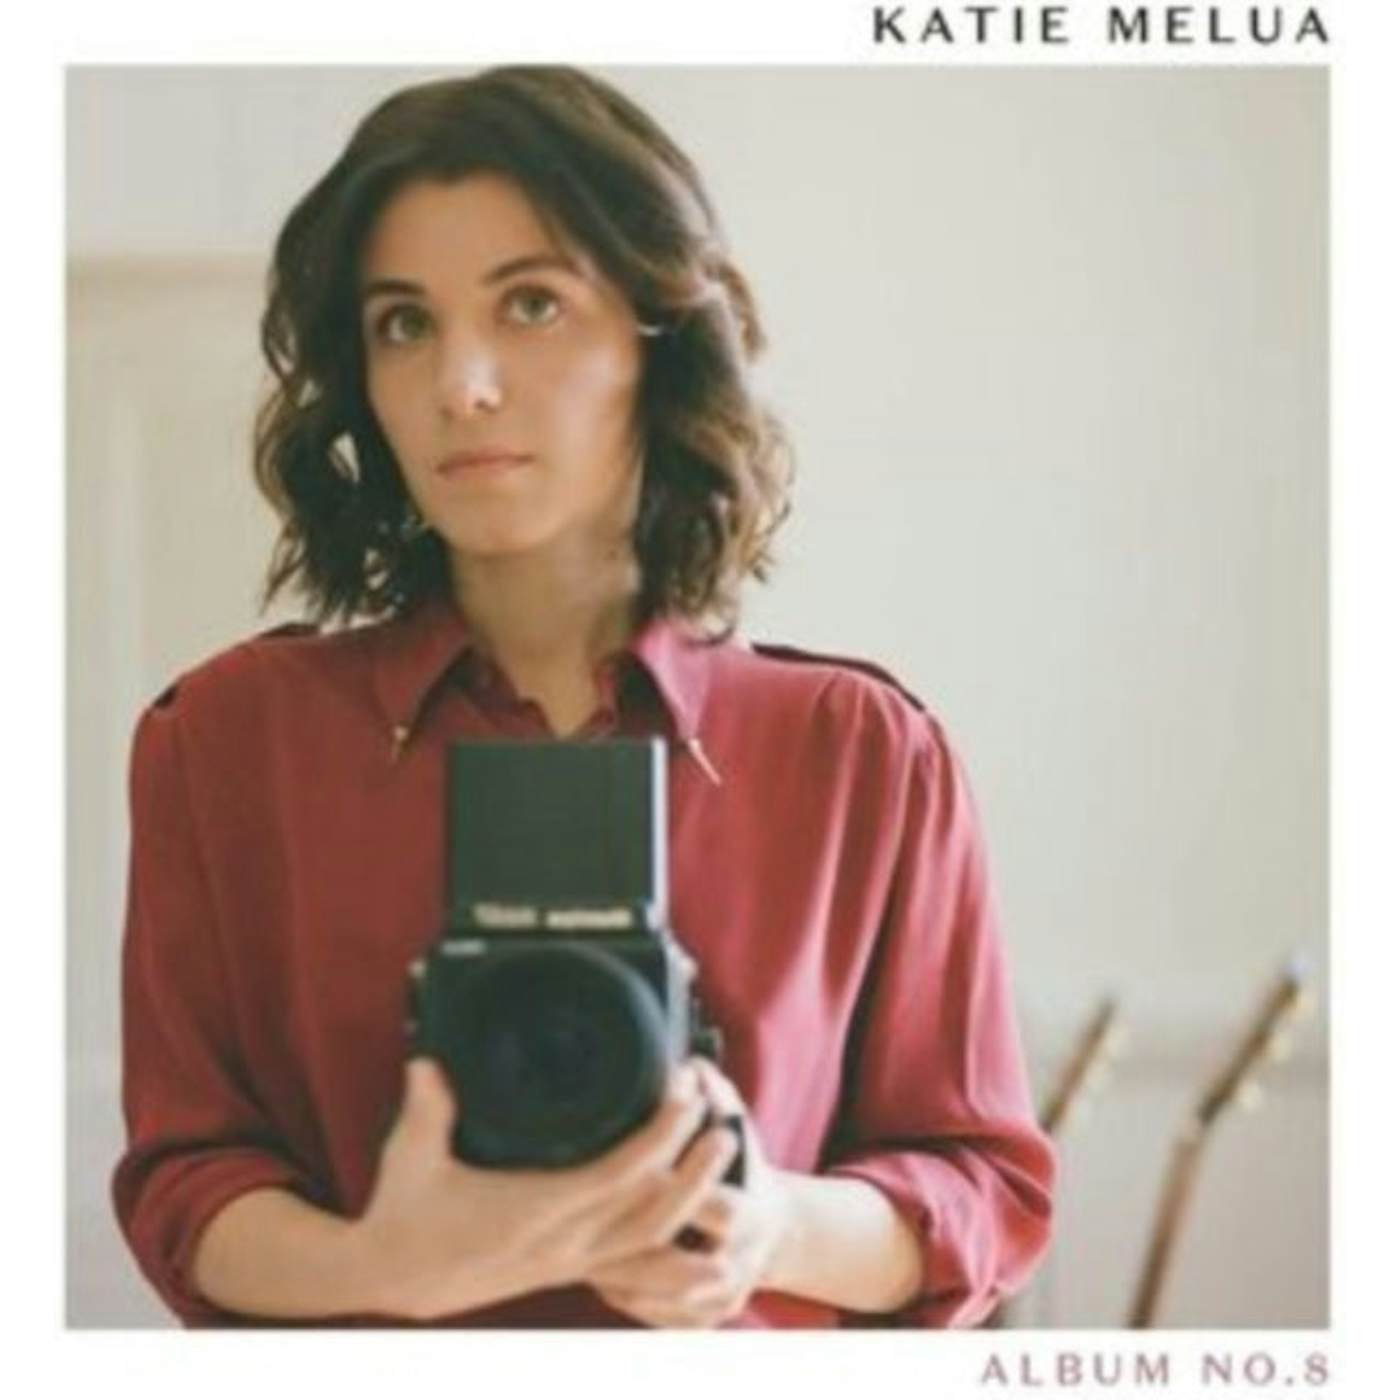 Katie Melua LP Vinyl Record - Album No. 8